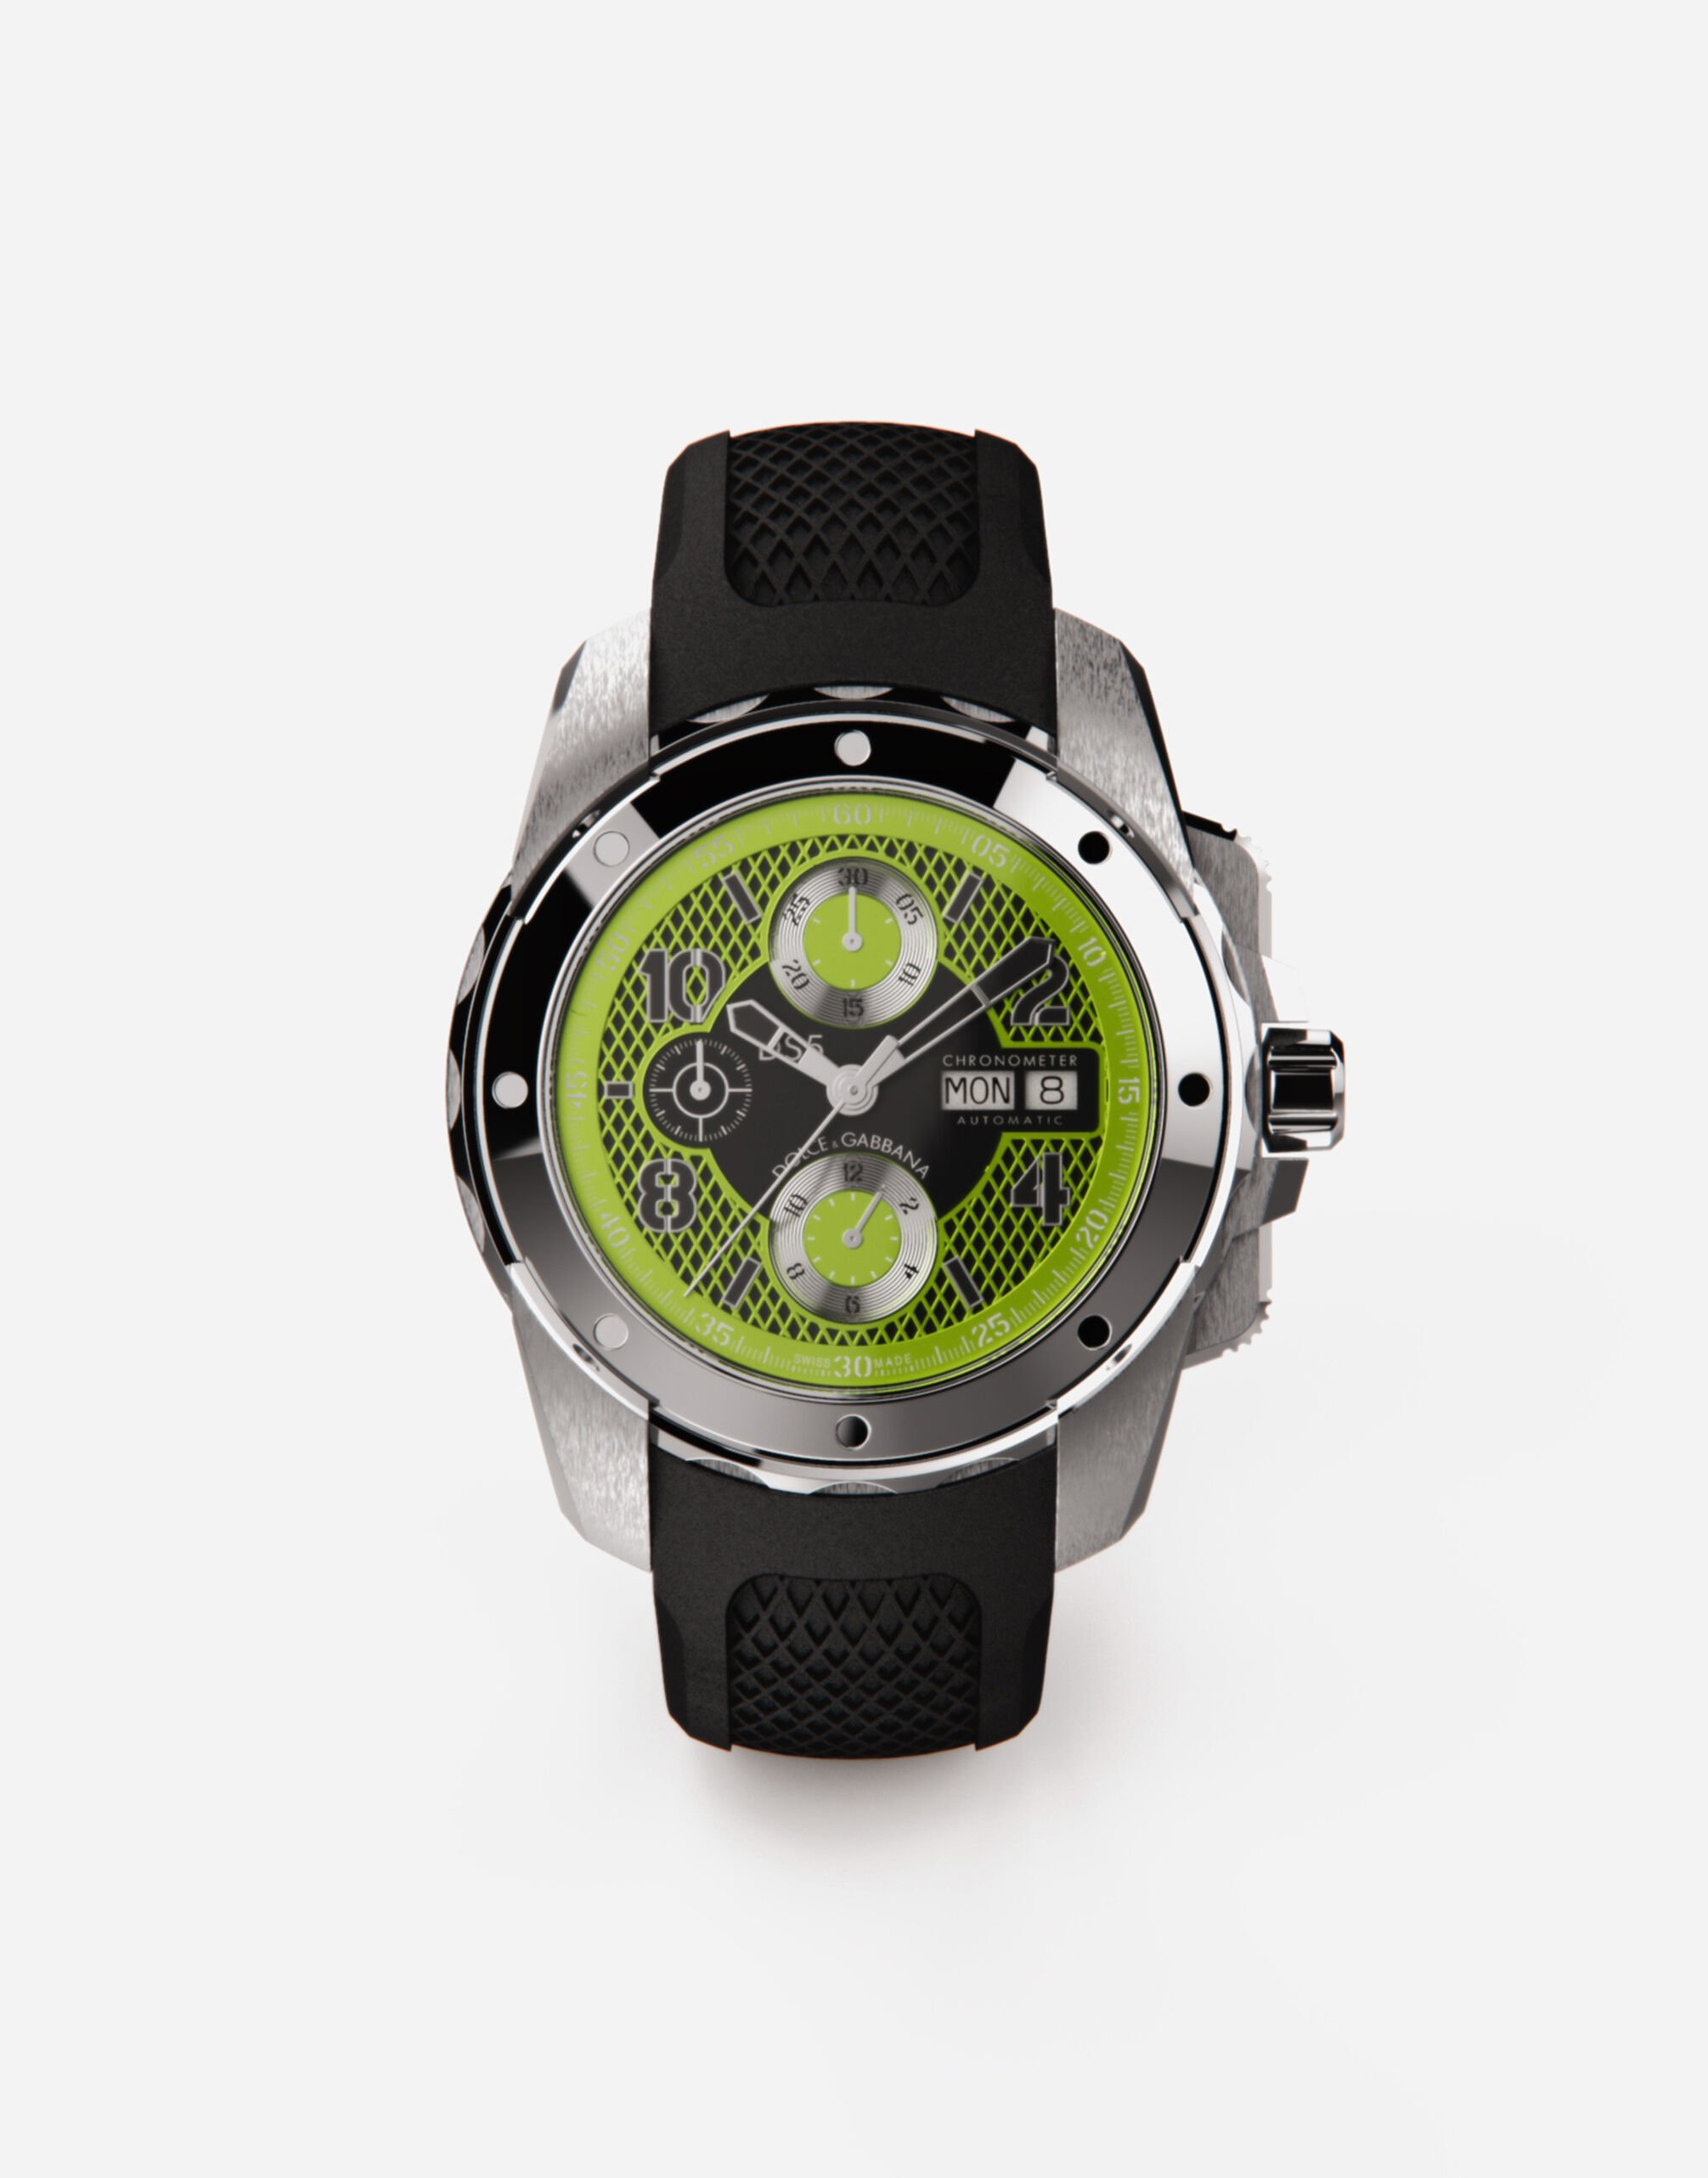 Dolce & Gabbana DS5 watch in steel Black WWFE1SWW066